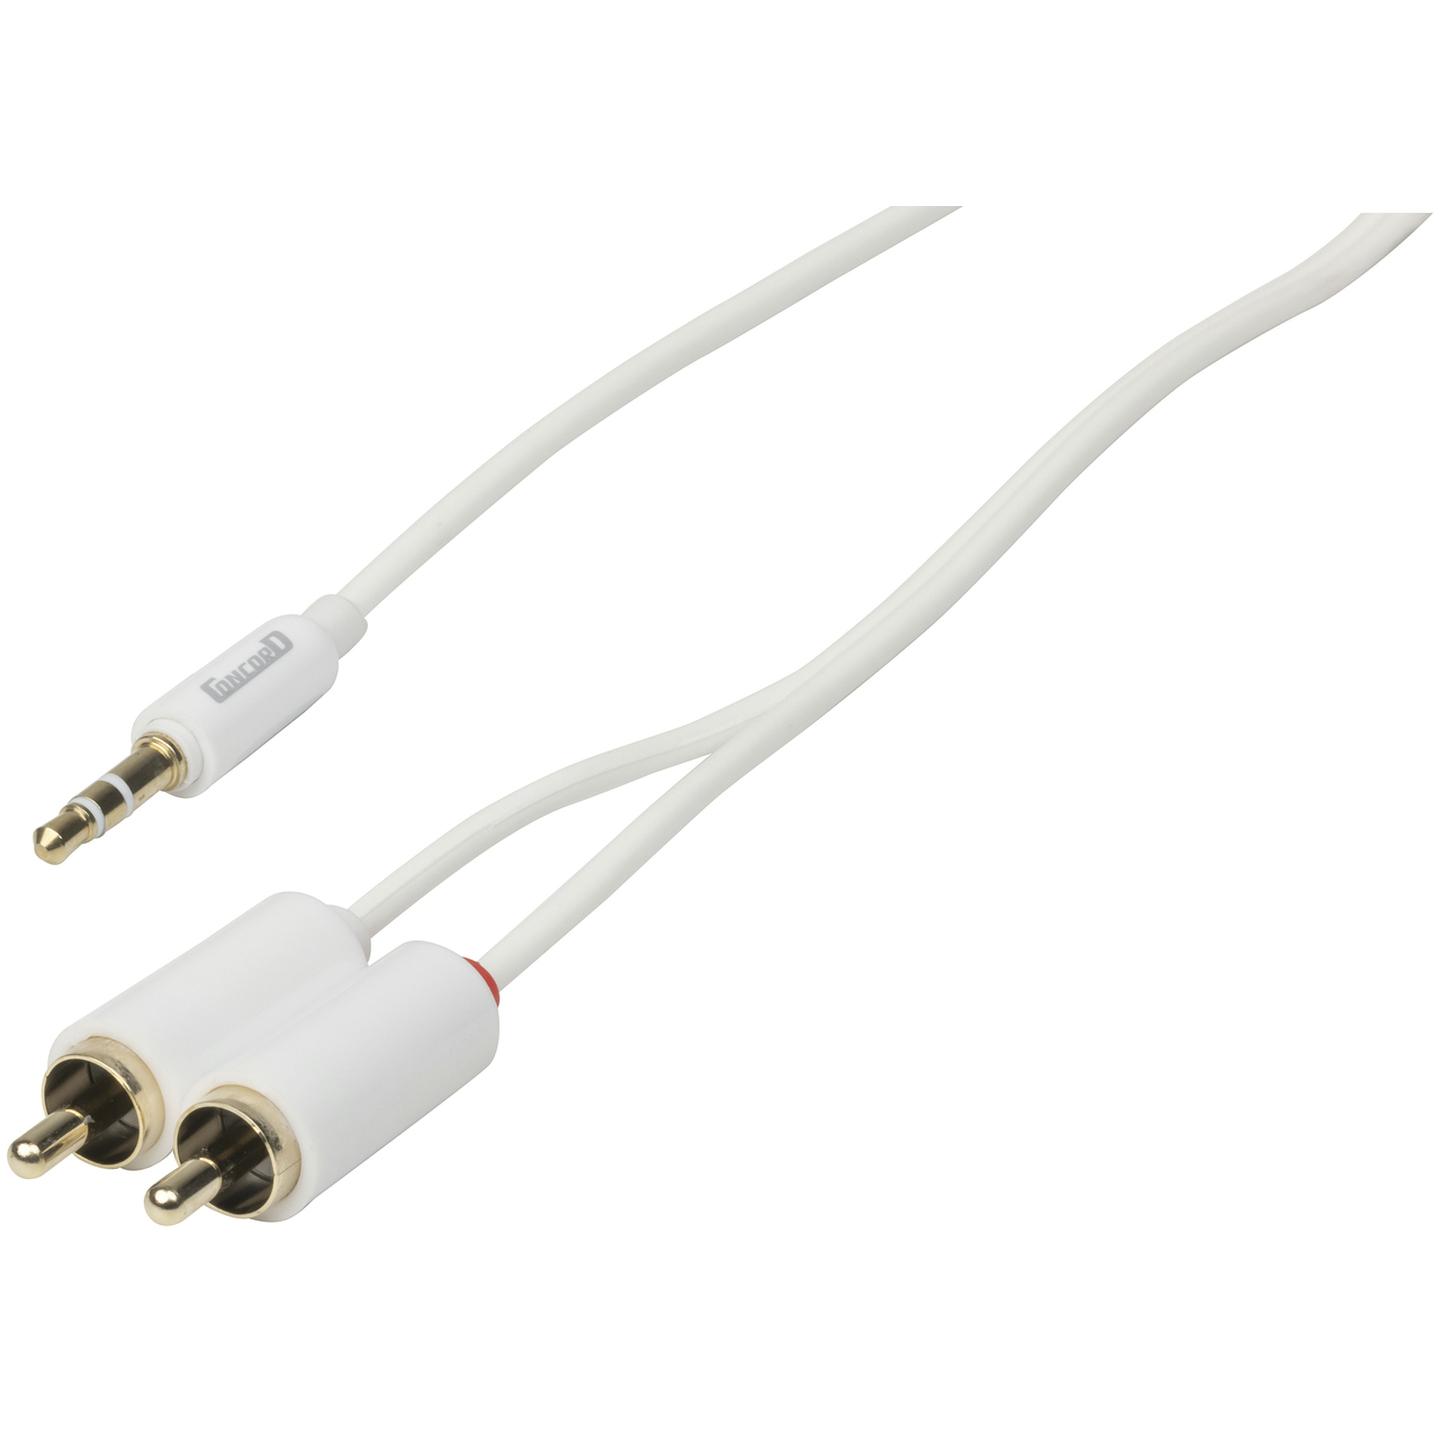 Slim 3.5mm Stereo Plug to 2 x RCA Plug Cable - 2m